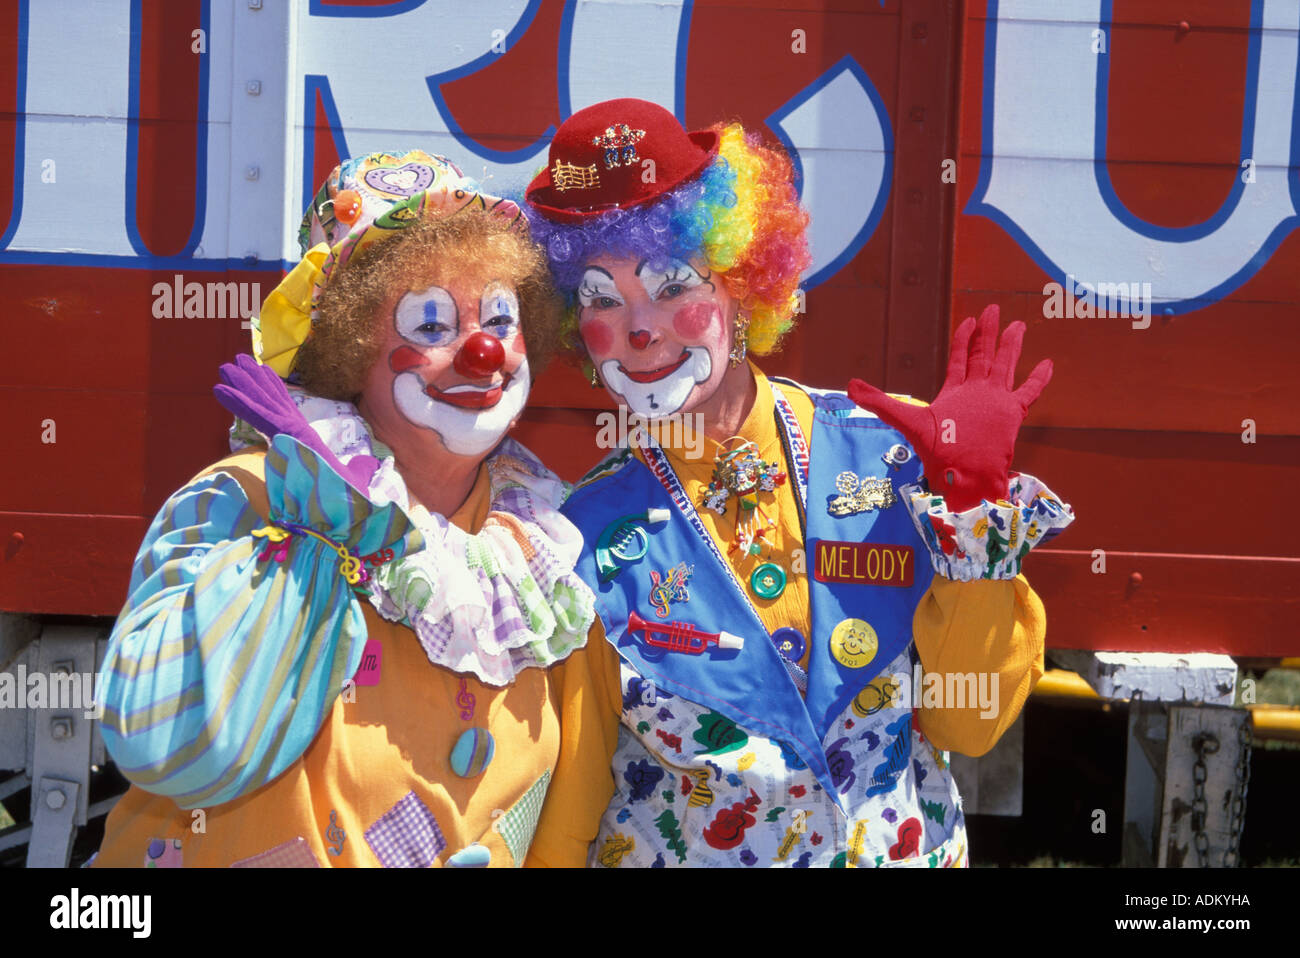 Der große Zirkus Clowns Parade Milwaukee Wisconsin Vereinigte Staaten von Amerika Stockfoto